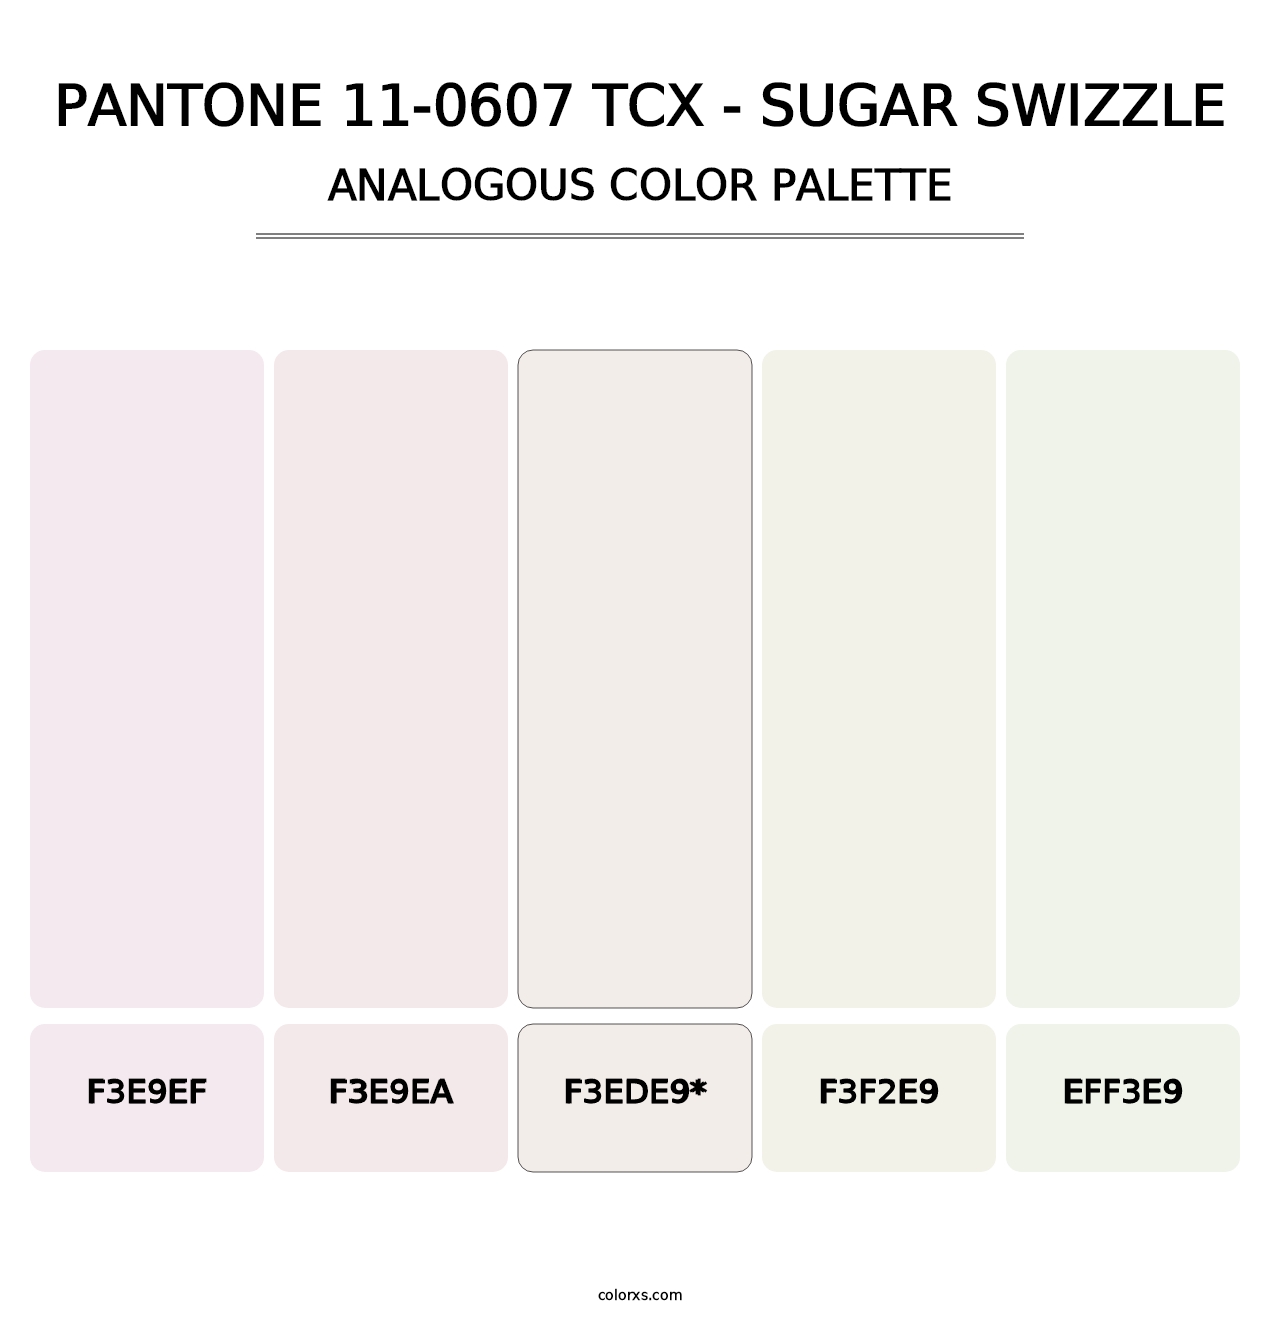 PANTONE 11-0607 TCX - Sugar Swizzle - Analogous Color Palette